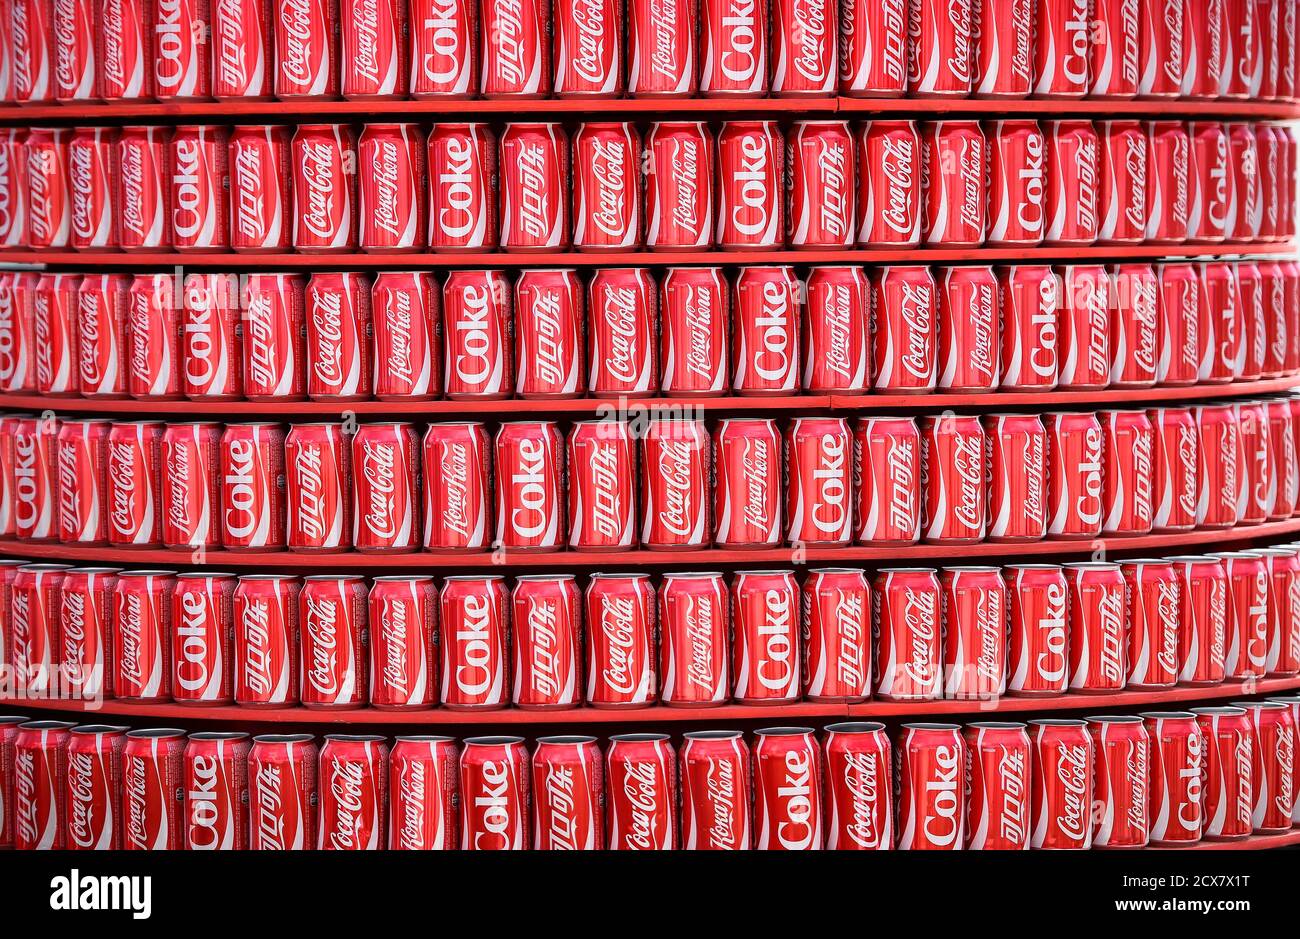 Las latas de Coca Cola se ven en una concesión dentro del estadio de fútbol Dunas Arena 12 de junio de 2014. Los patrocinadores Adidas , Sony, Visa y Coca-Cola